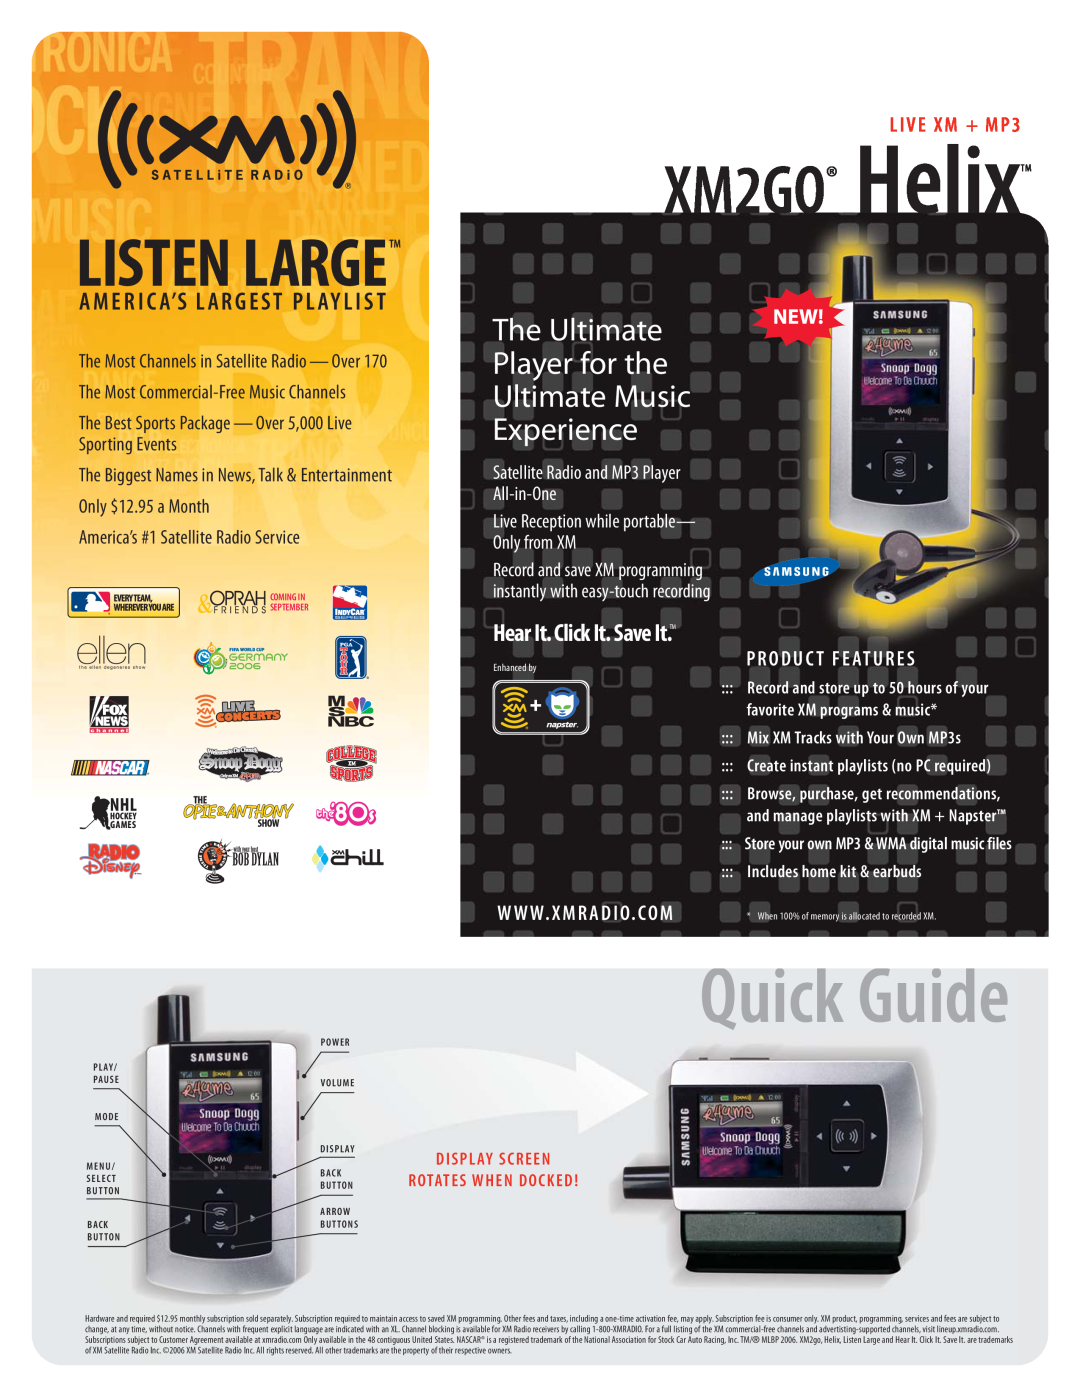 XM Satellite Radio xm2go manual LIVE XM + MP3, Quick Guide, XM2GO HelixTM, Hear It.Click It. Save It.TM, Produc T Features 